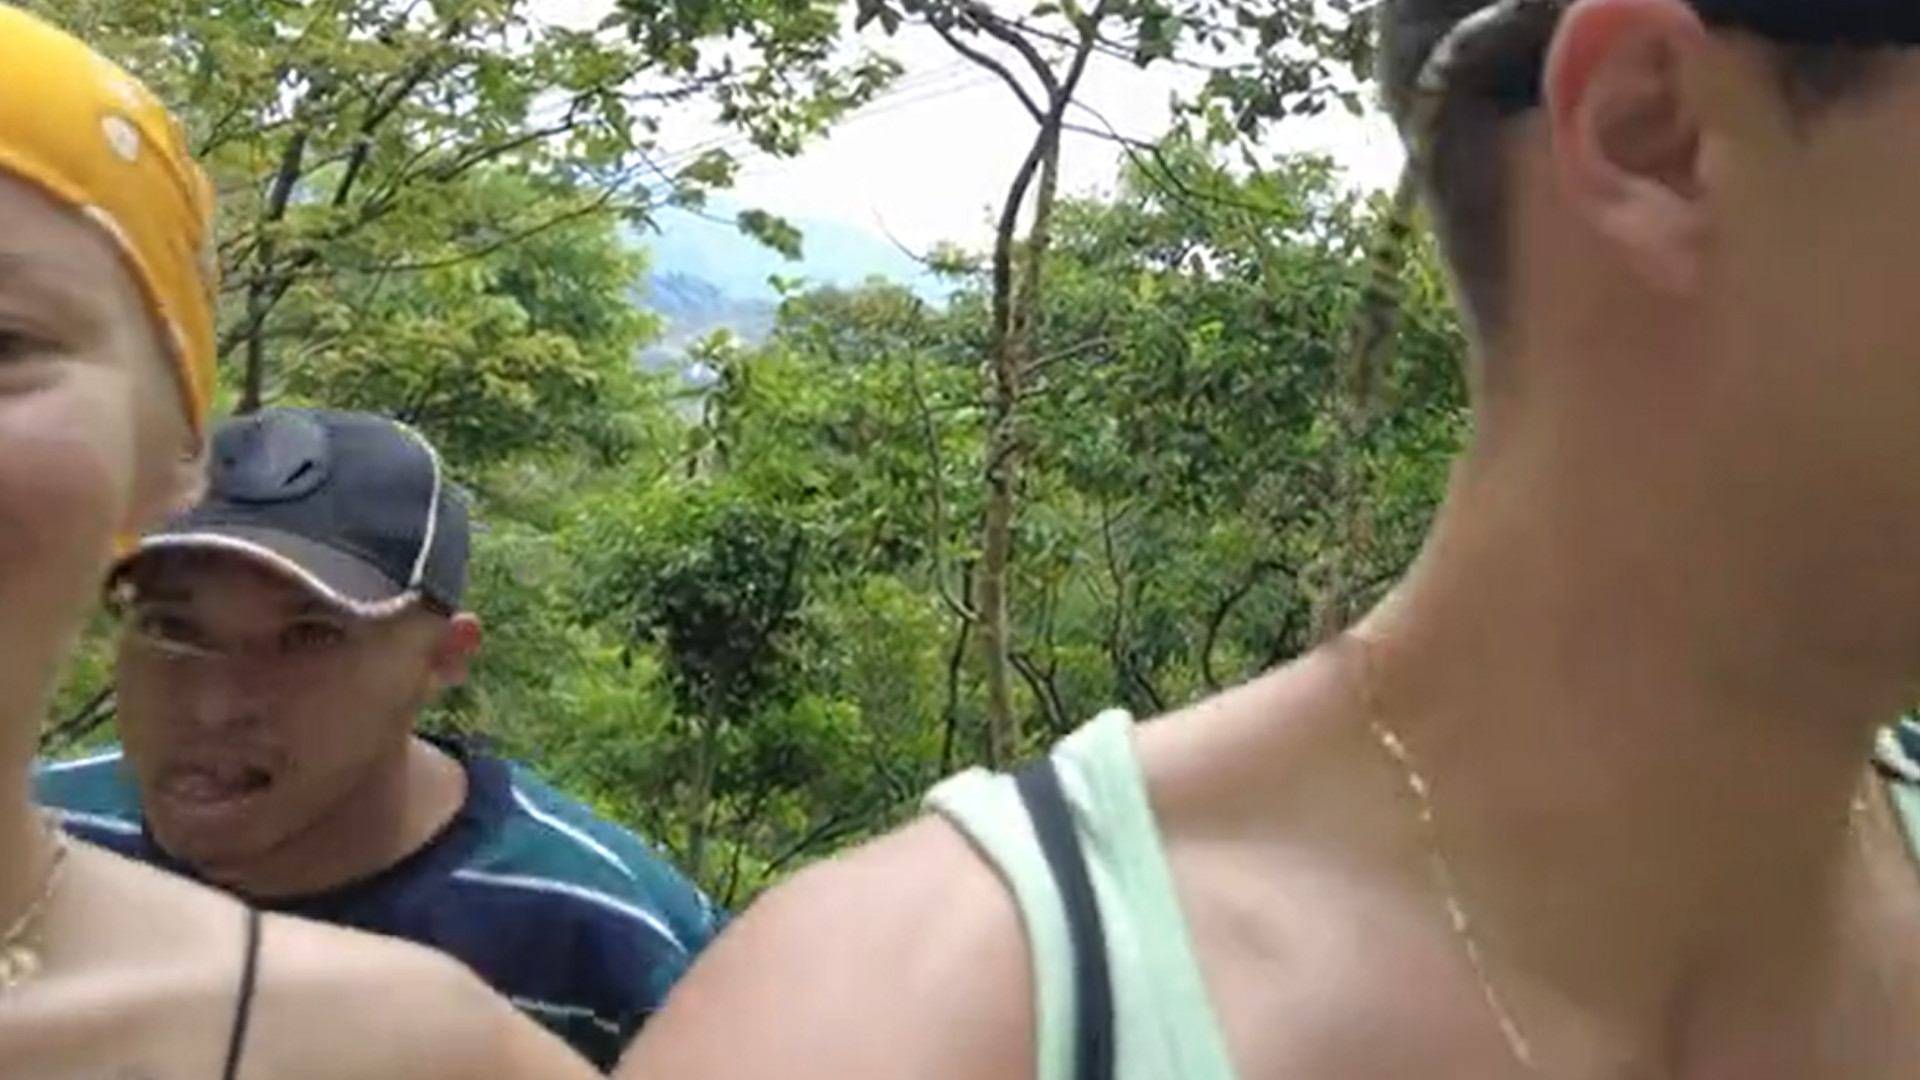 Los turistas polacos estaban grabando su visita a un cerro en Medellín, cuando fueron atacados por la espalda por una pareja de delincuentes. (Captura pantalla)